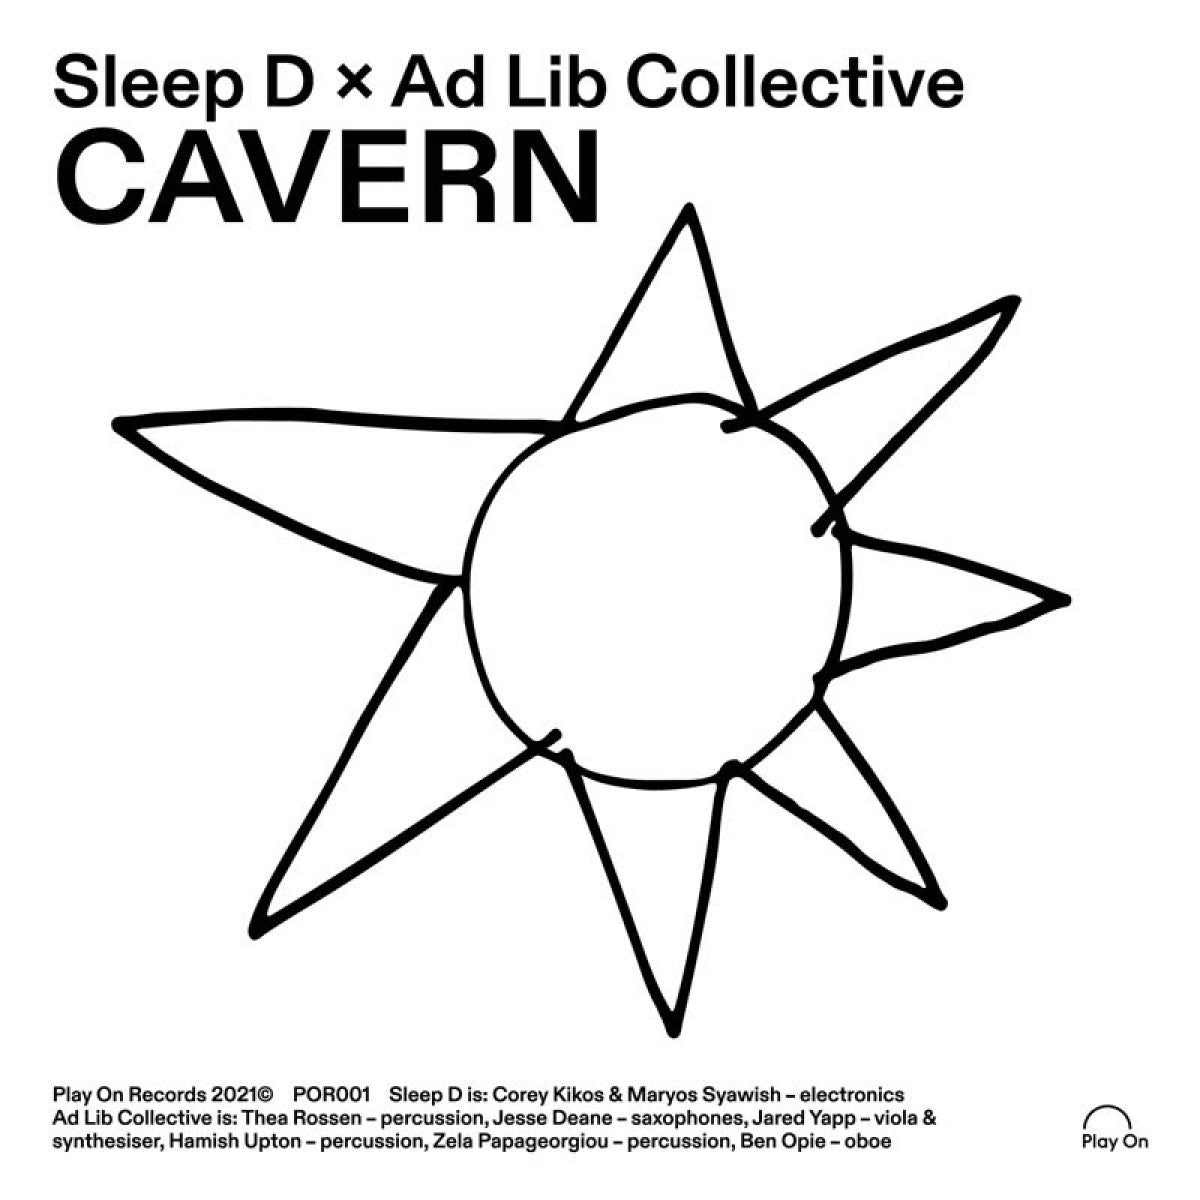 SLEEP D x AD LIB COLLECTIVE - "CAVERN" 7"